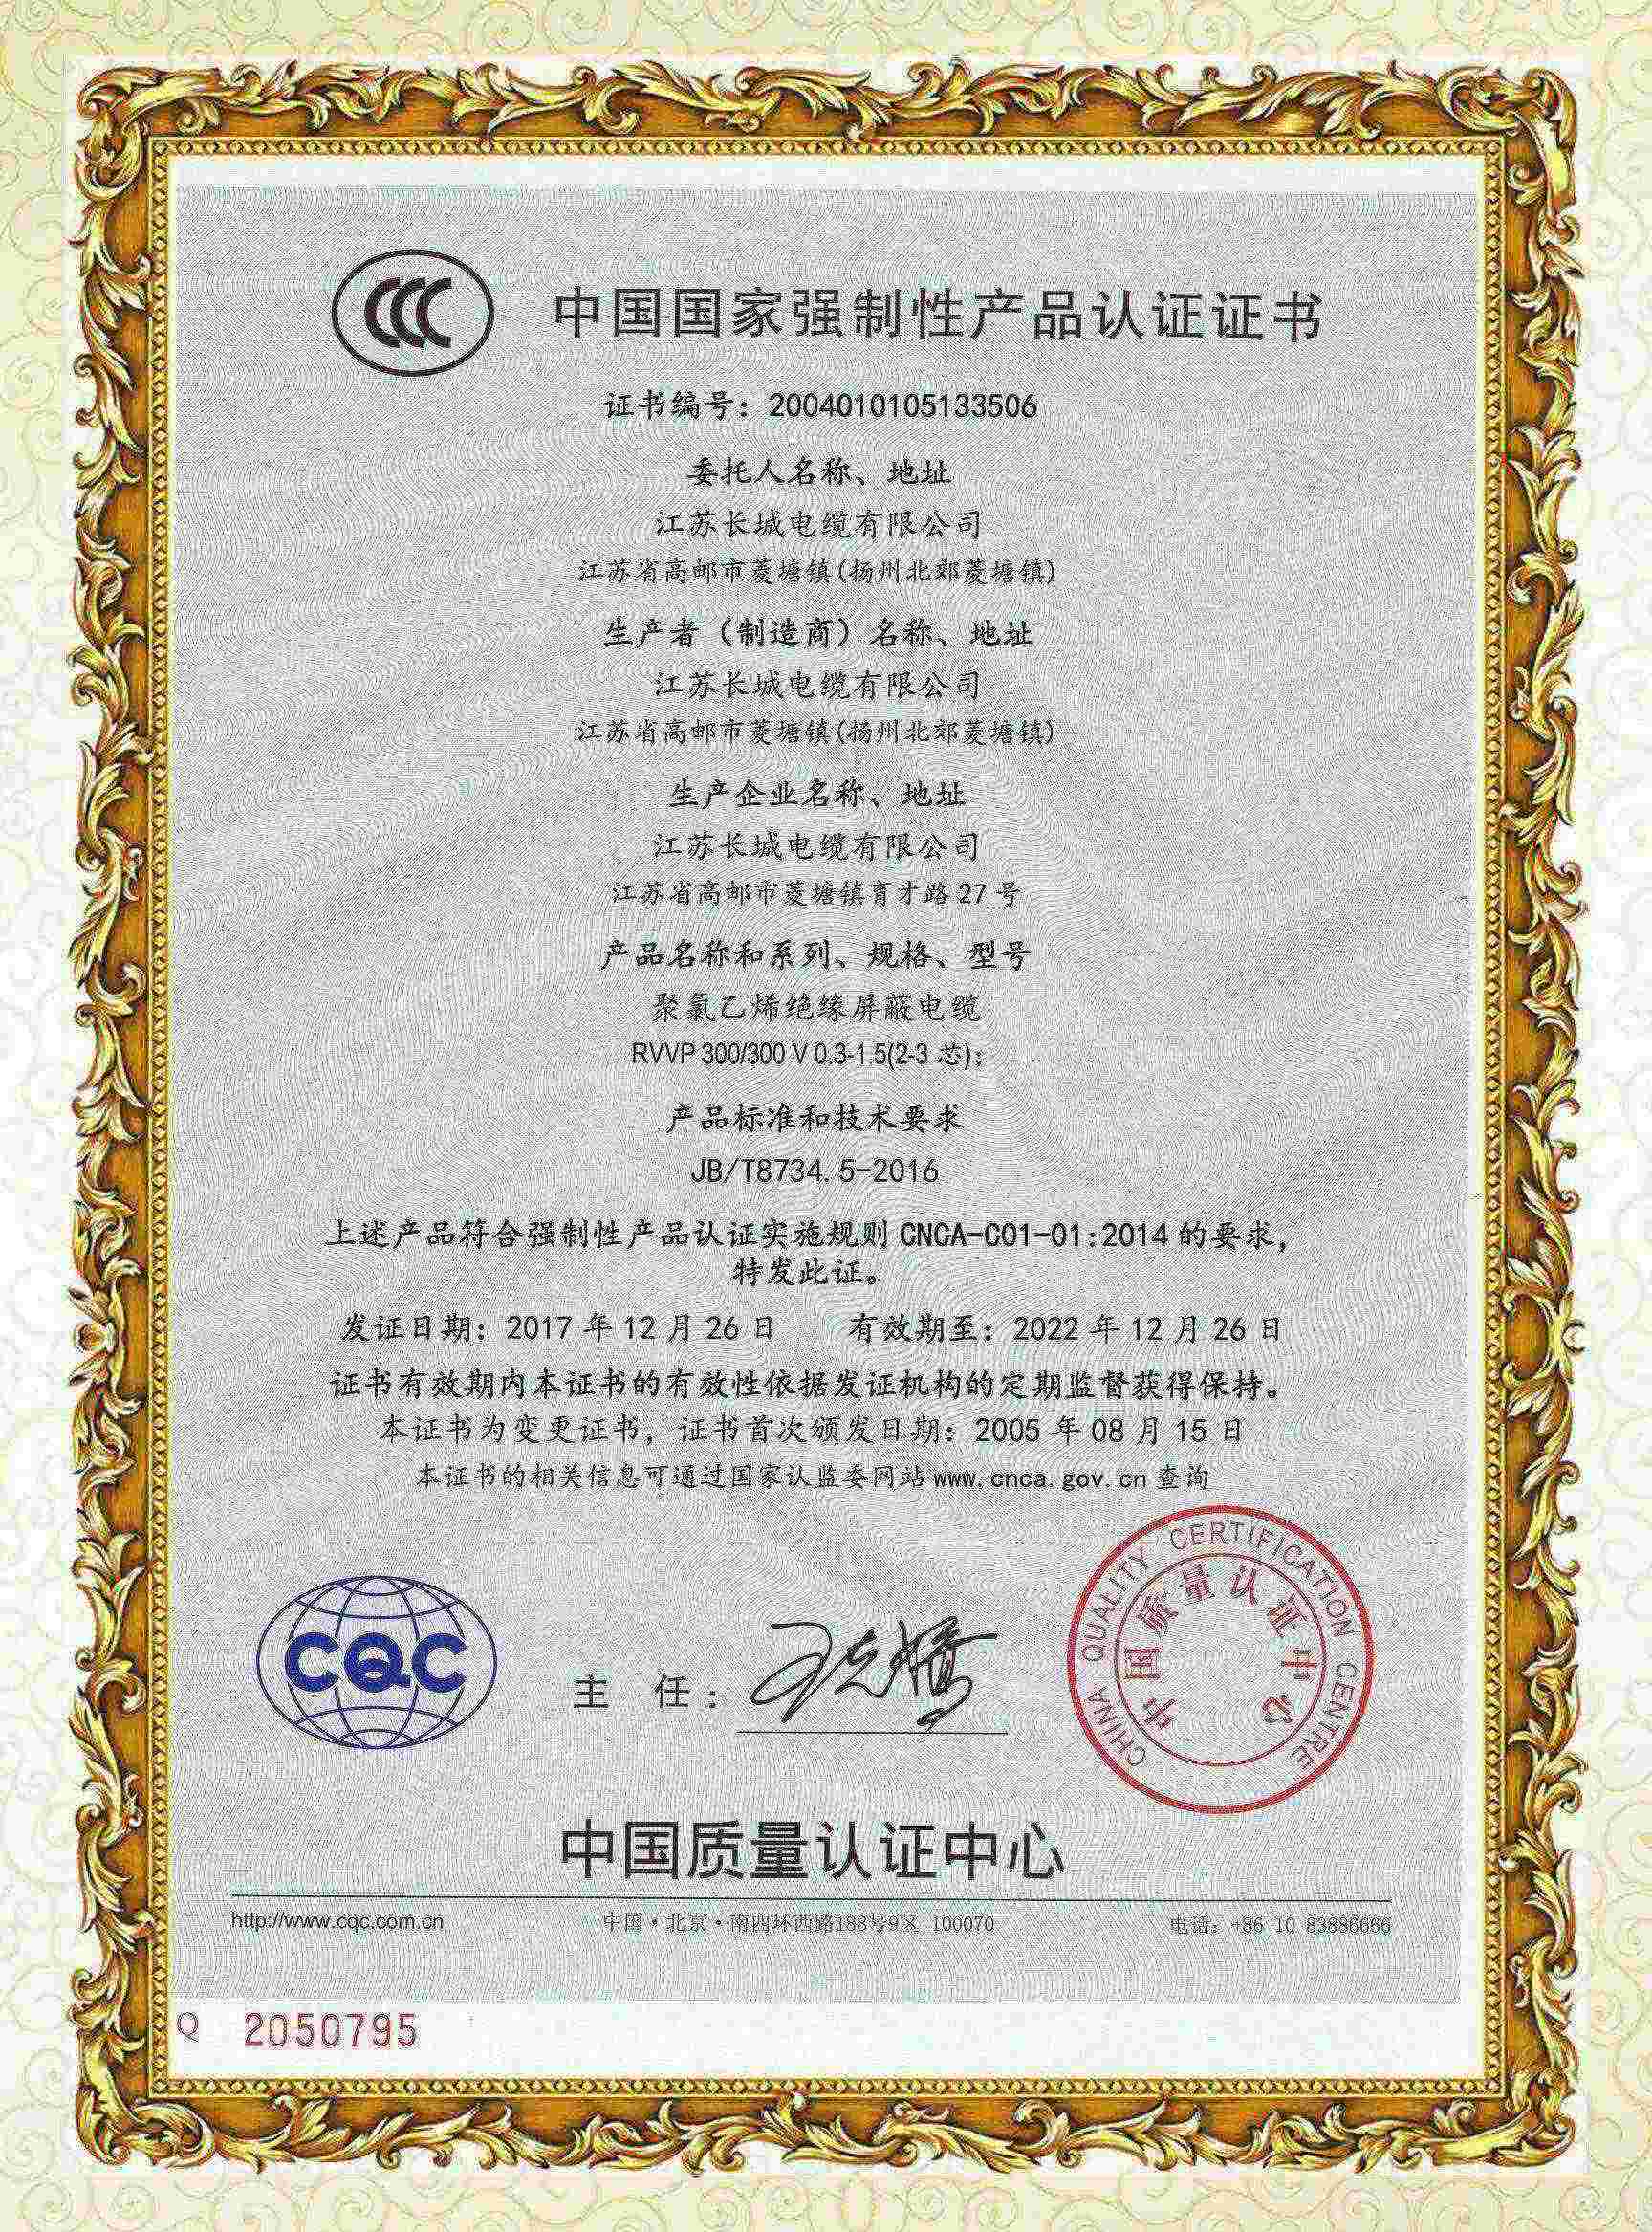 CCC產品認證證書